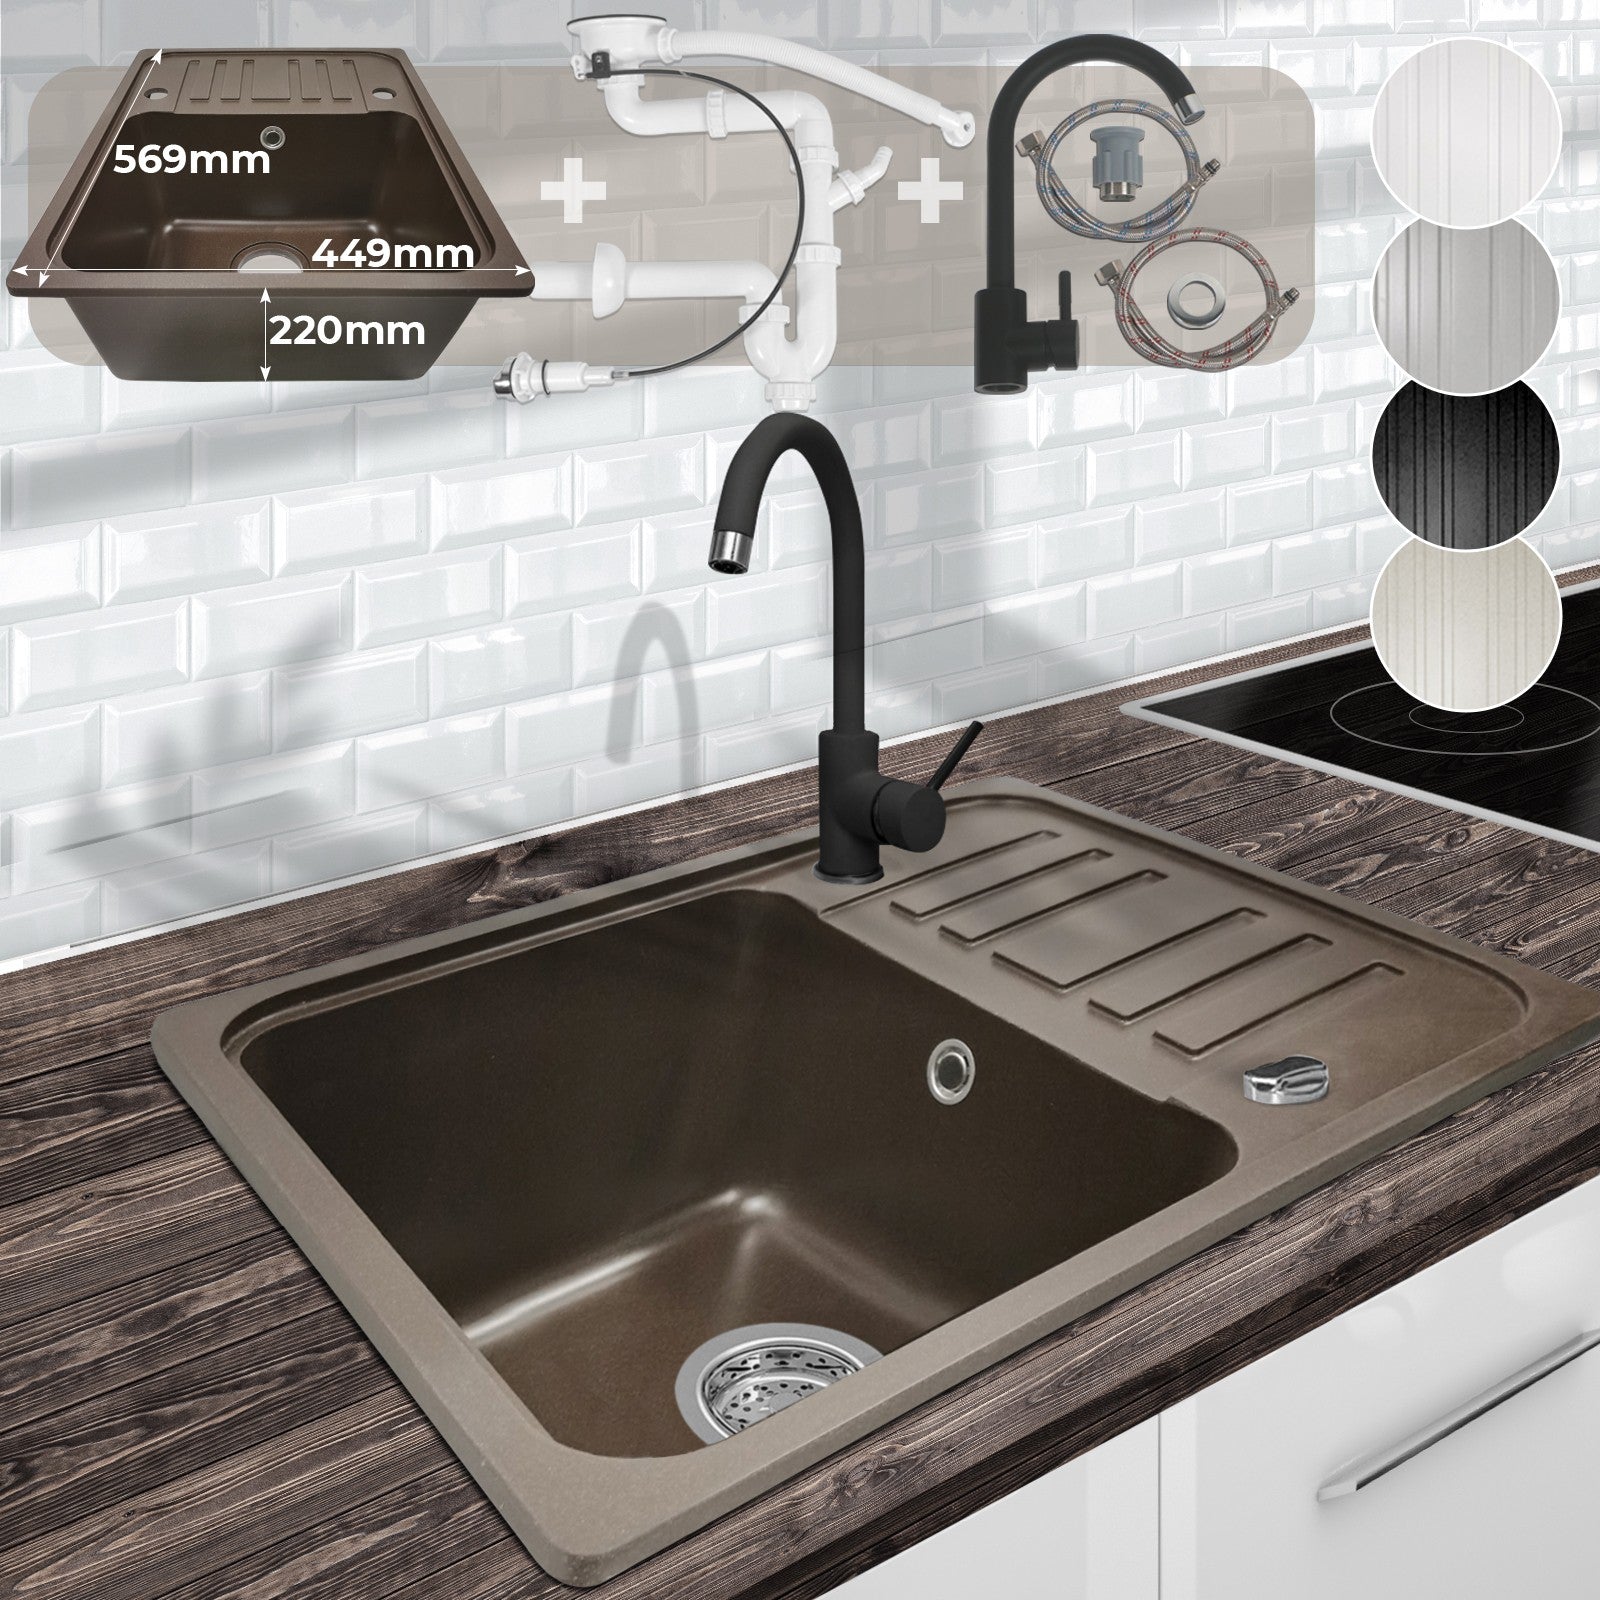 Billede af Køkkenvask med afløbsbakke, vandhane og vendbart afløbgranit, 569x220x449 mm, brun